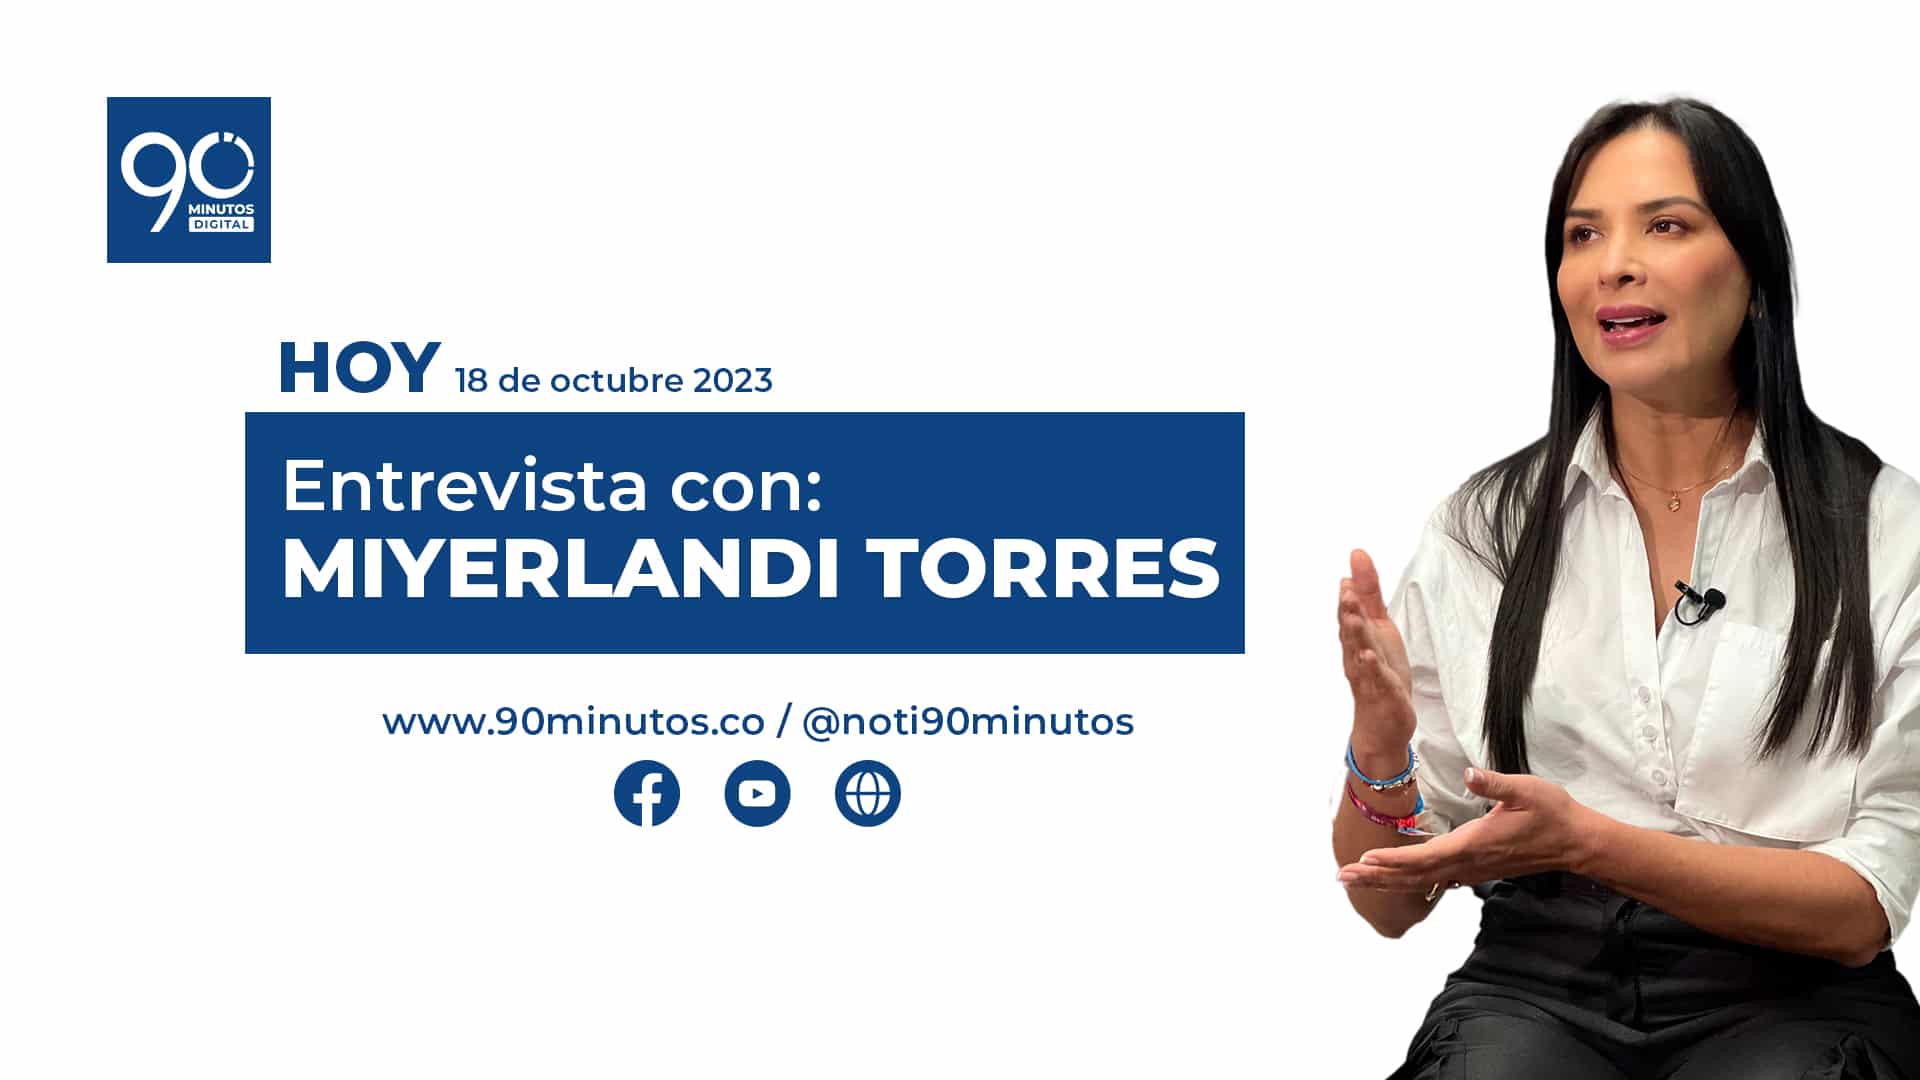 Miyerlandi Torres en 90 Minutos - Entrevista en vivo hoy a las 3:00 pm